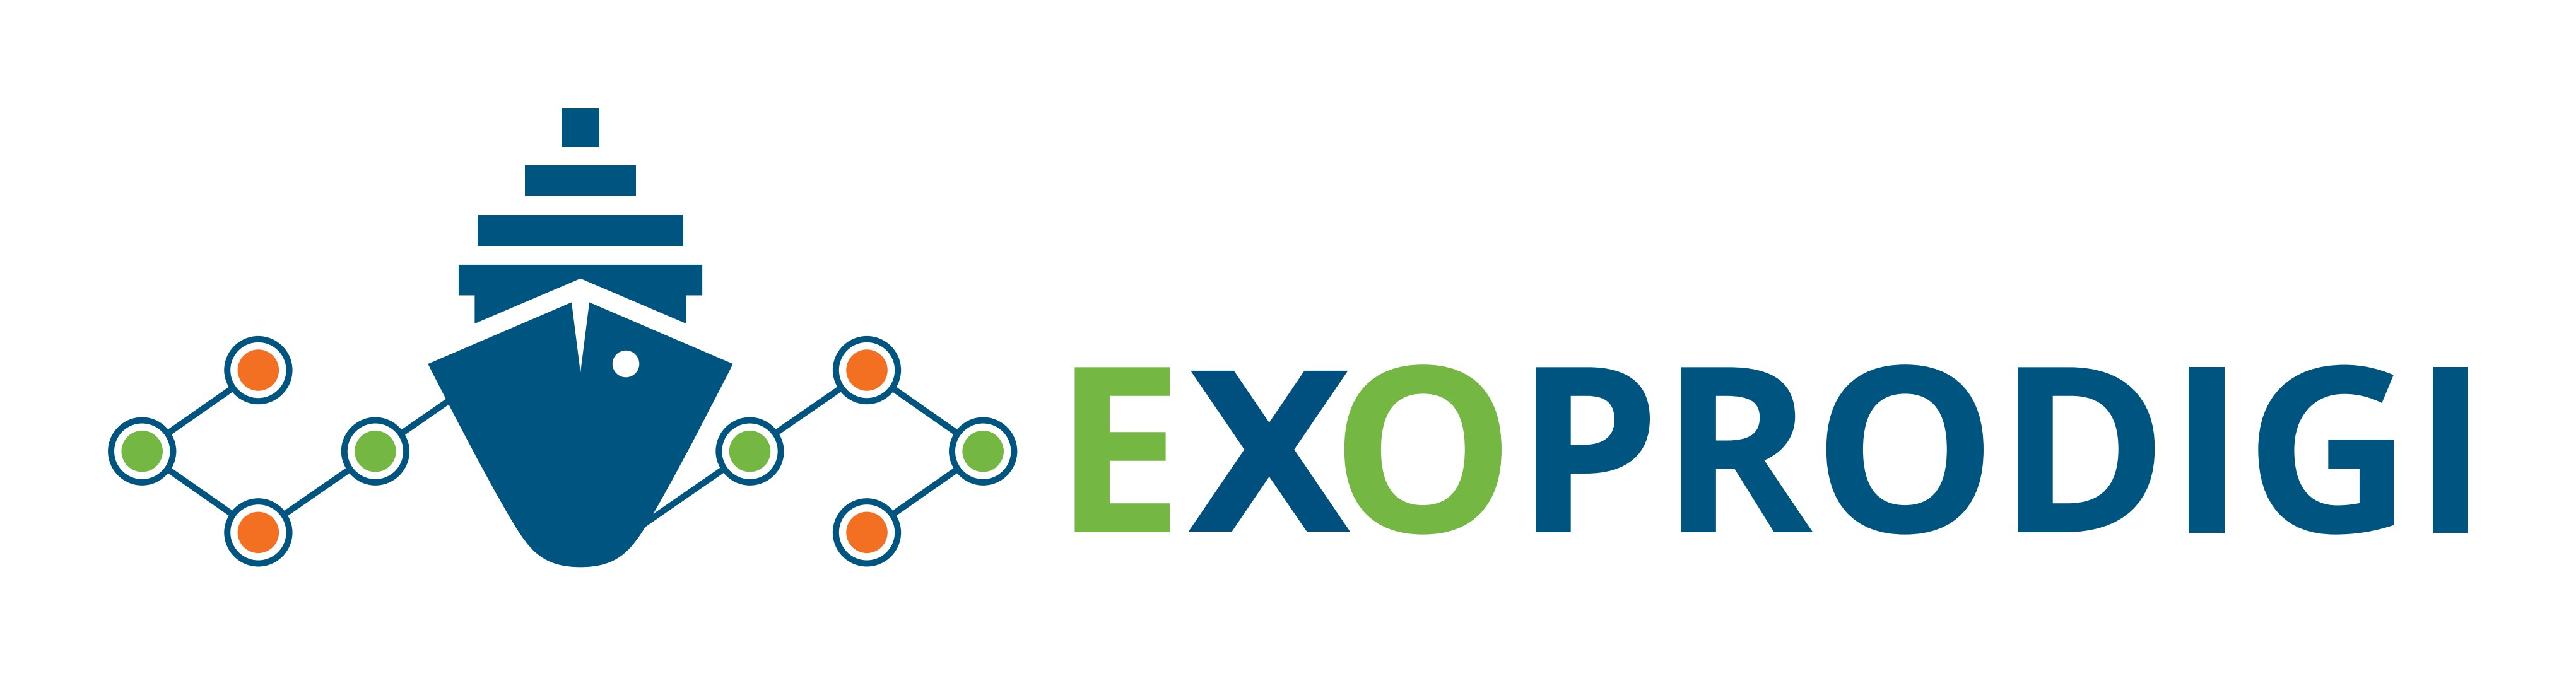 Exoprodigi Logo